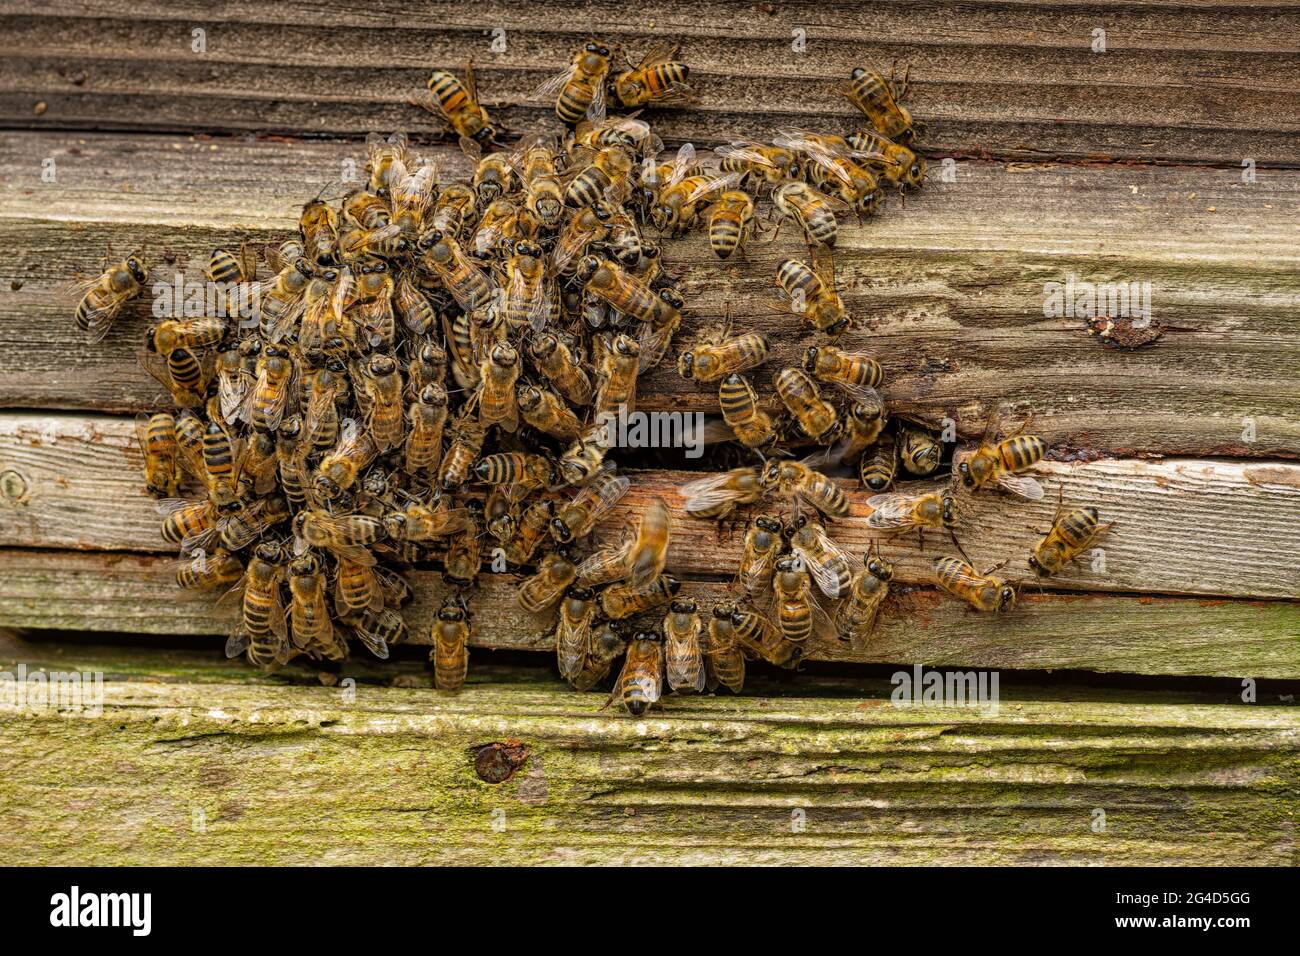 Gruppo di api europee si sono accoccolate insieme intorno all'ingresso dell'alveare in una giornata fredda. Foto Stock